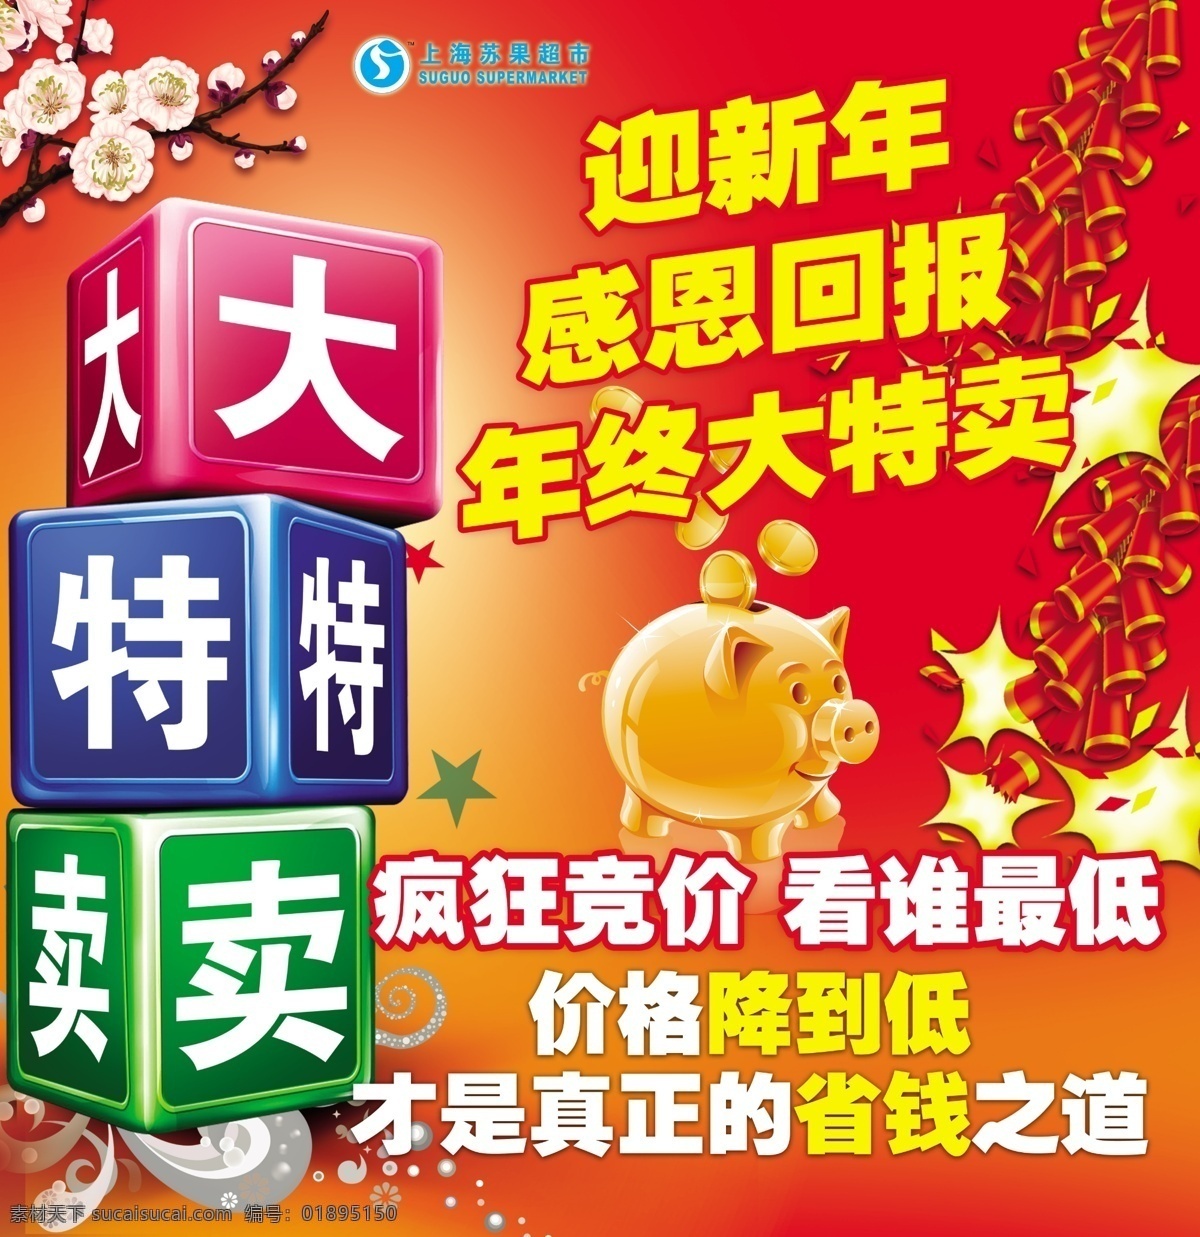 上海 苏果 年终 大 特卖 海报 上海苏果超市 存钱罐 梅花 鞭炮 迎新 年 感恩 回报 广告设计模板 源文件